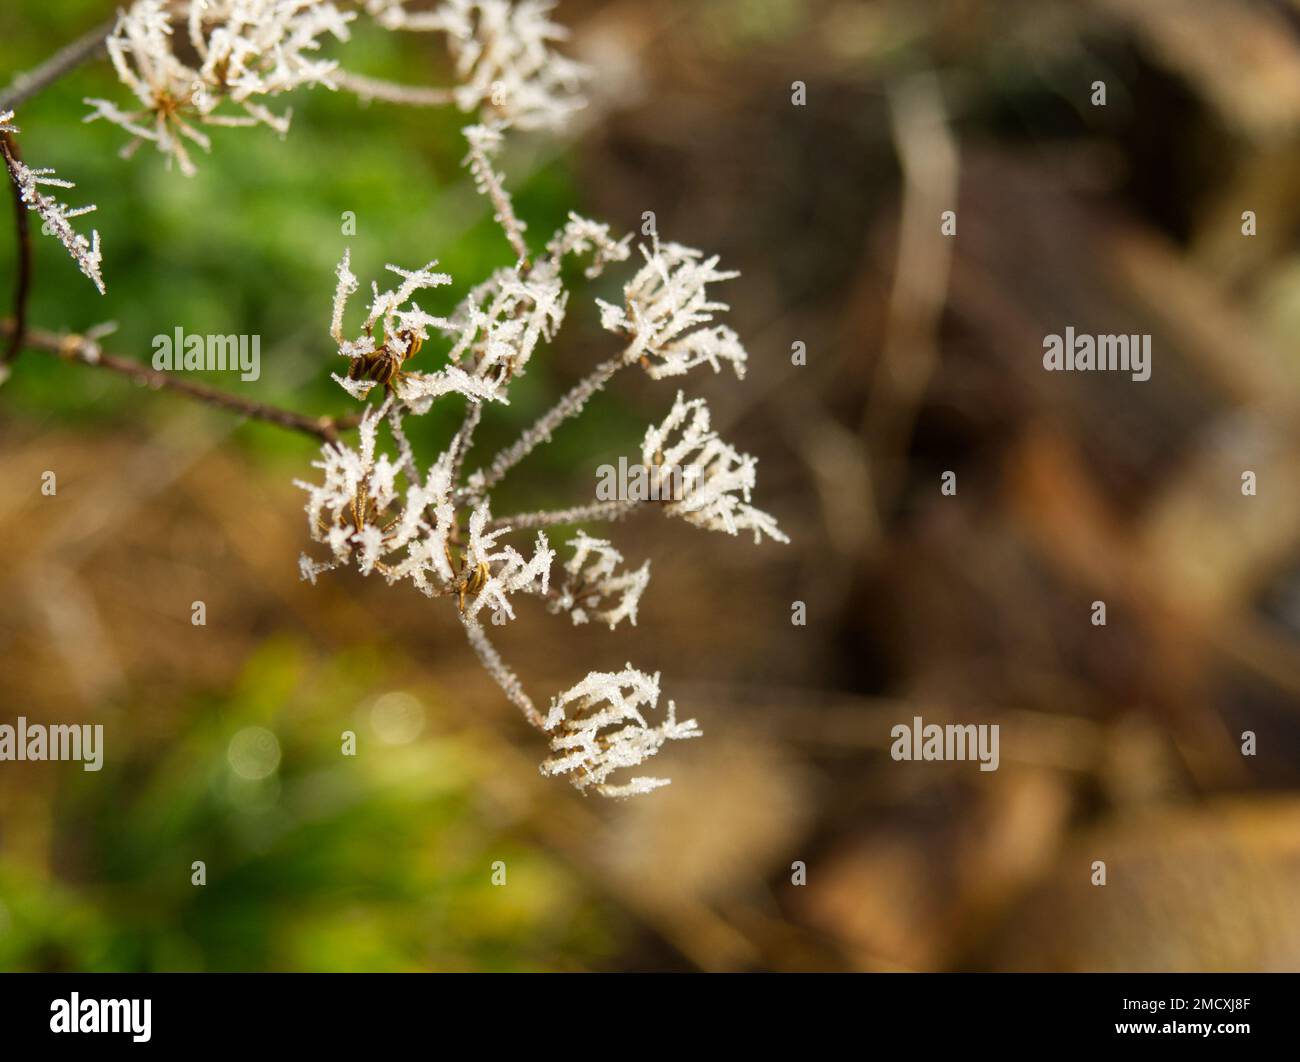 hoar frost on fennel seed heads Stock Photo